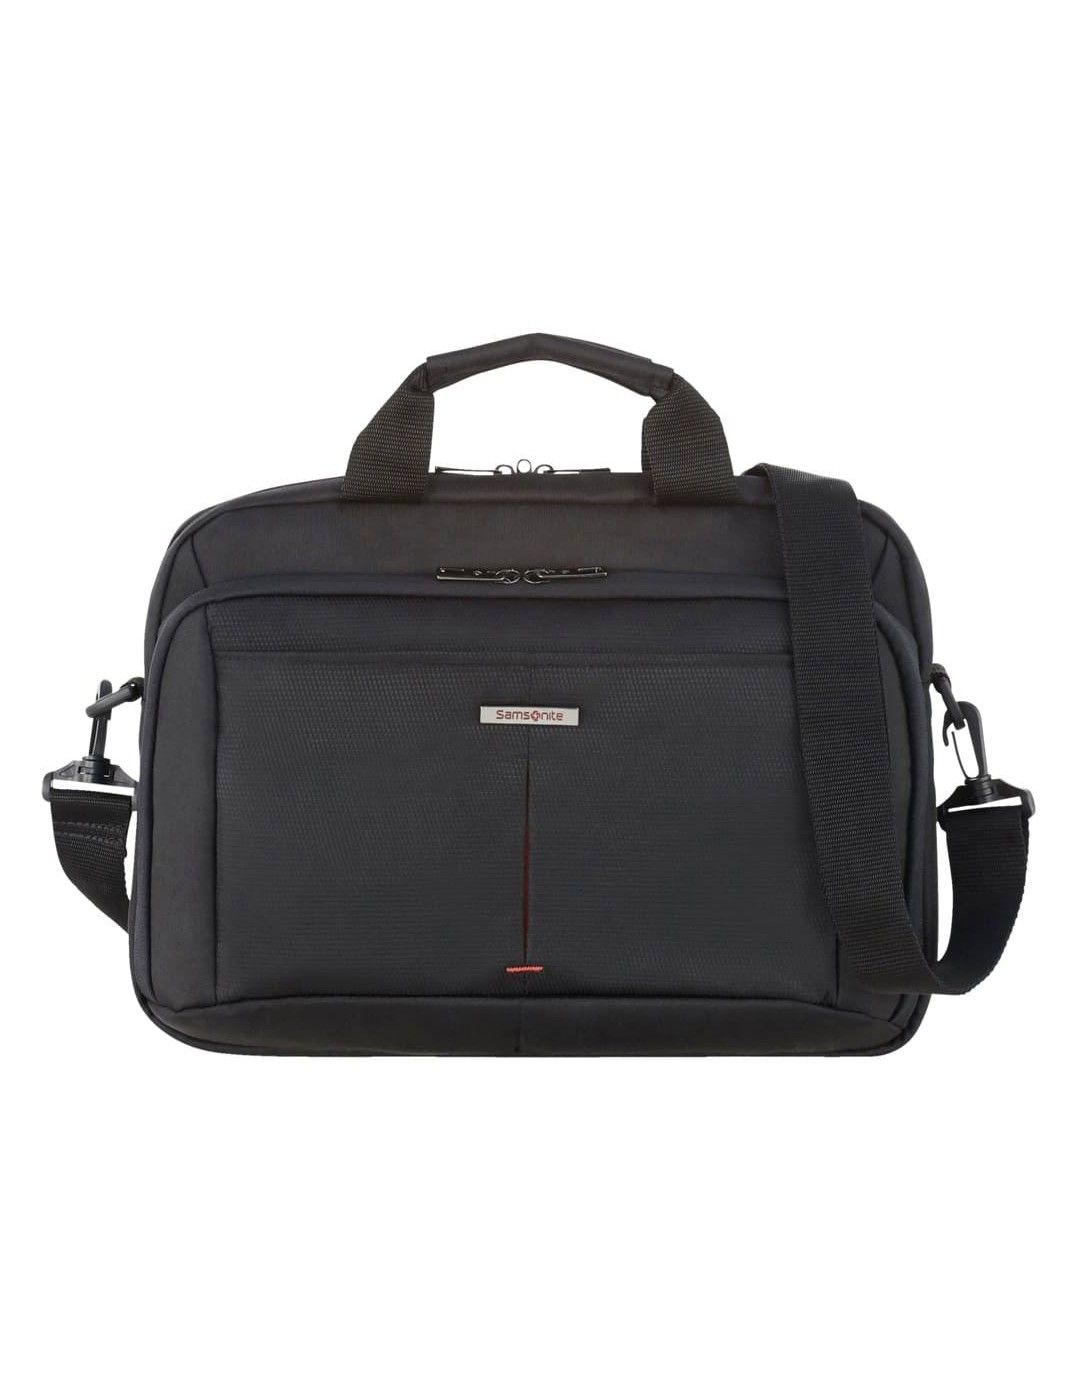 Samsonite Guardit 2.0 briefcase 13.3 inches